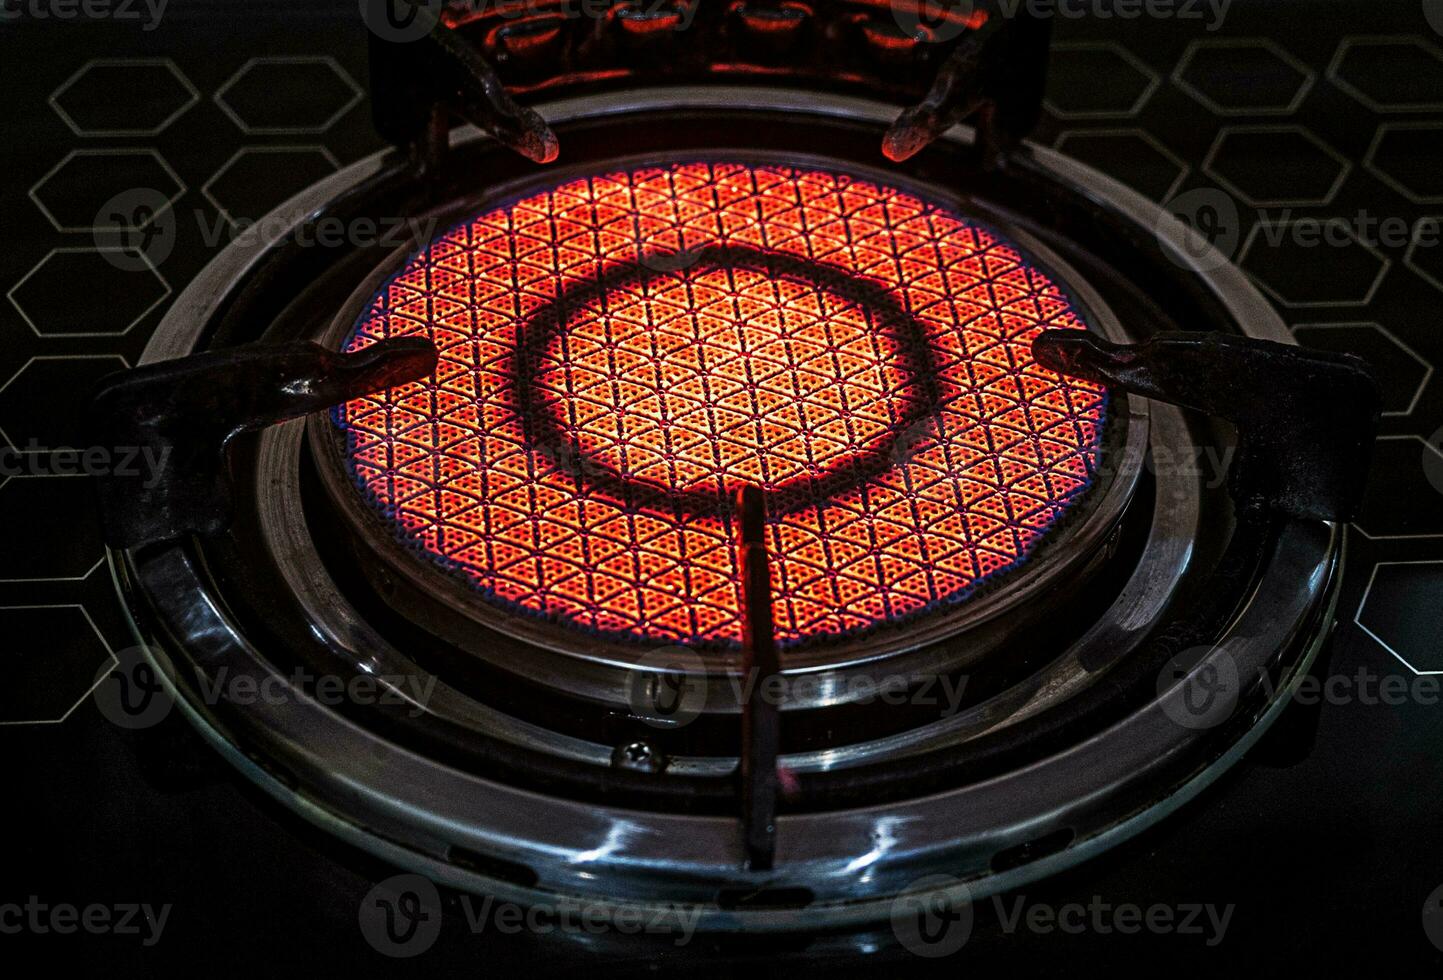 technologie de rayonnement infrarouge sur motif céramique de cuisinière à gaz photo